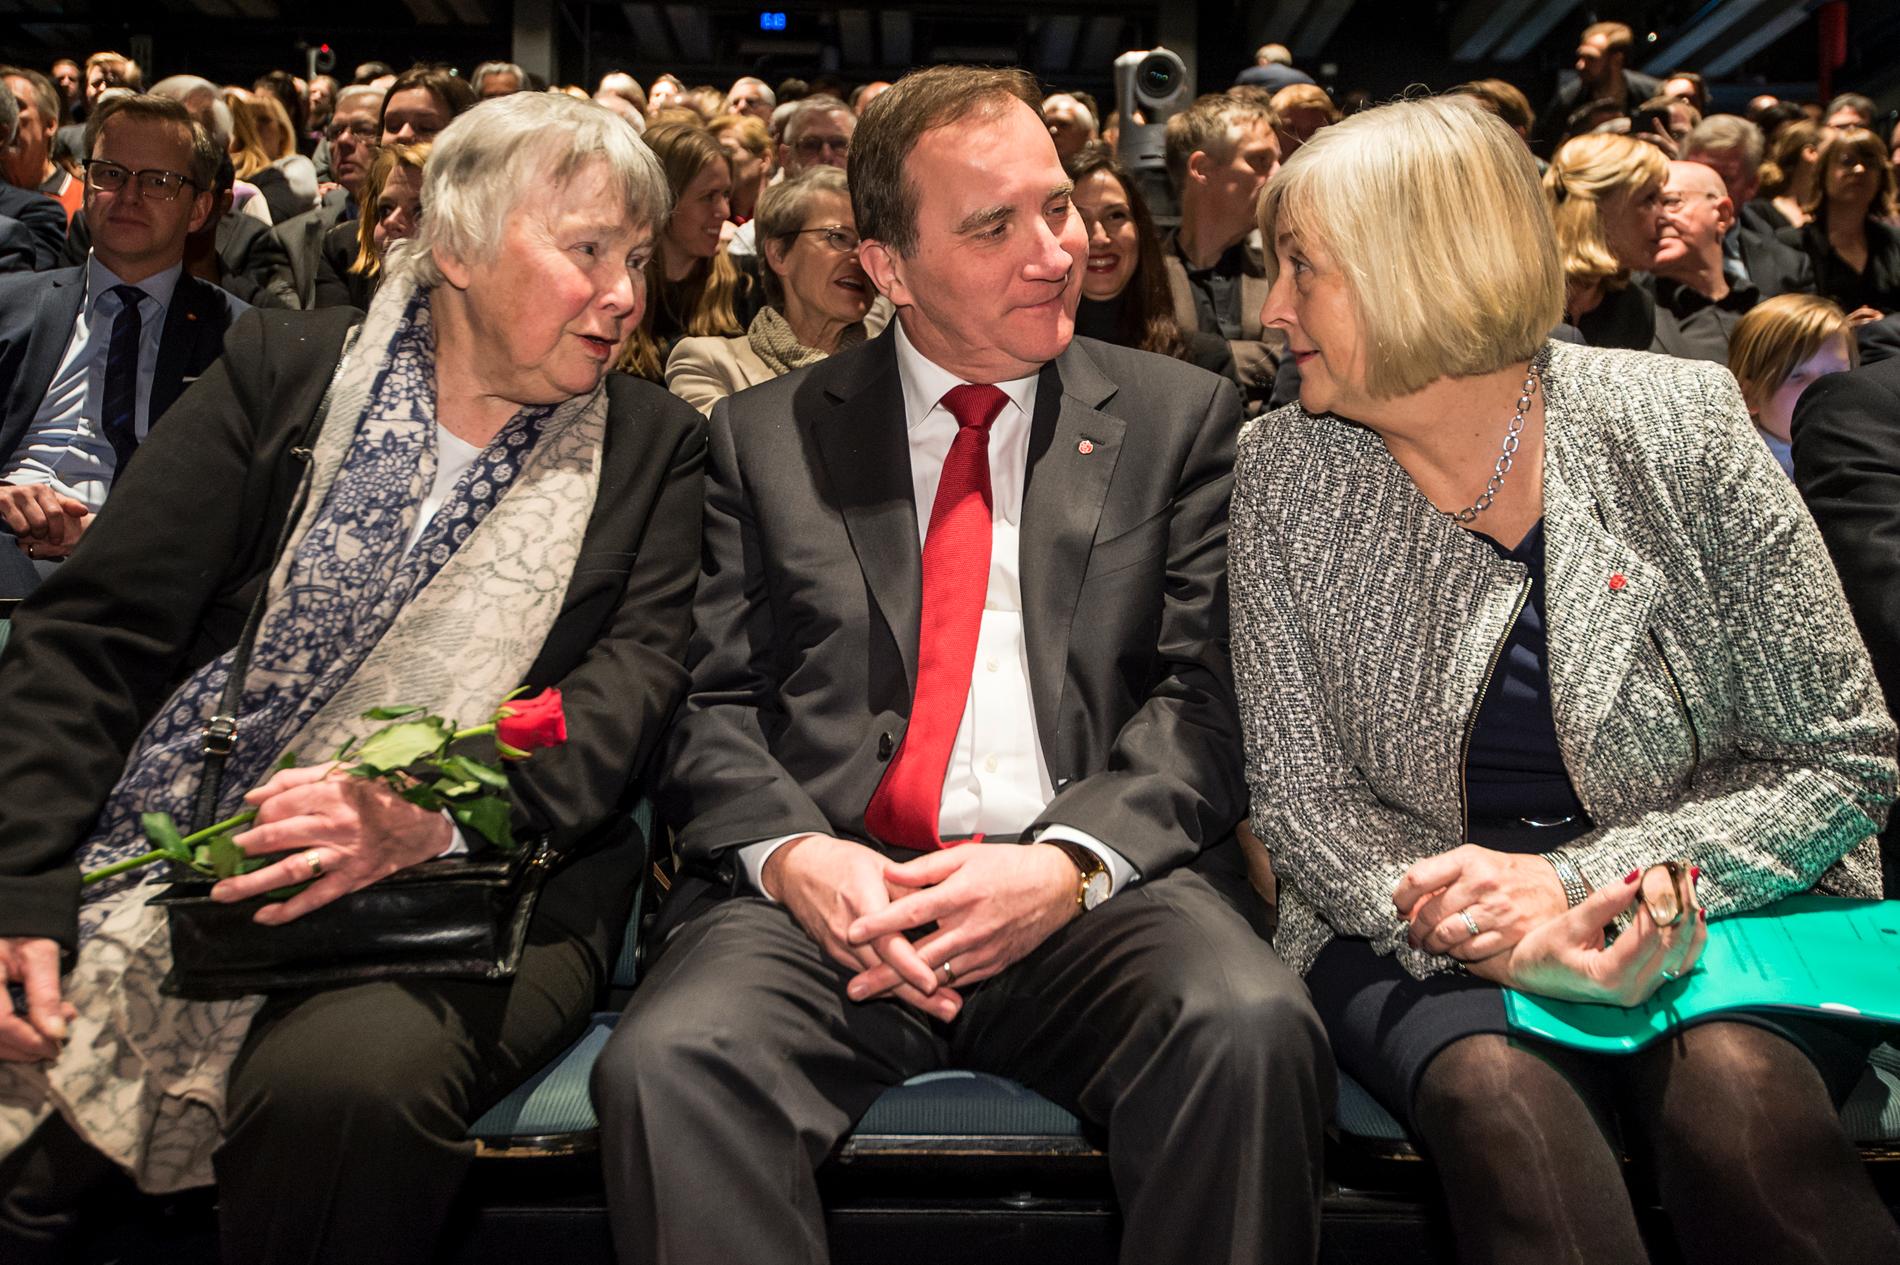 30 år sedan Palme-mordet. Minnesdag på kulturhuset i Stockholm. Lisbeth Palme, Stefan Löfven, statsminister, med fr Ulla löfven.